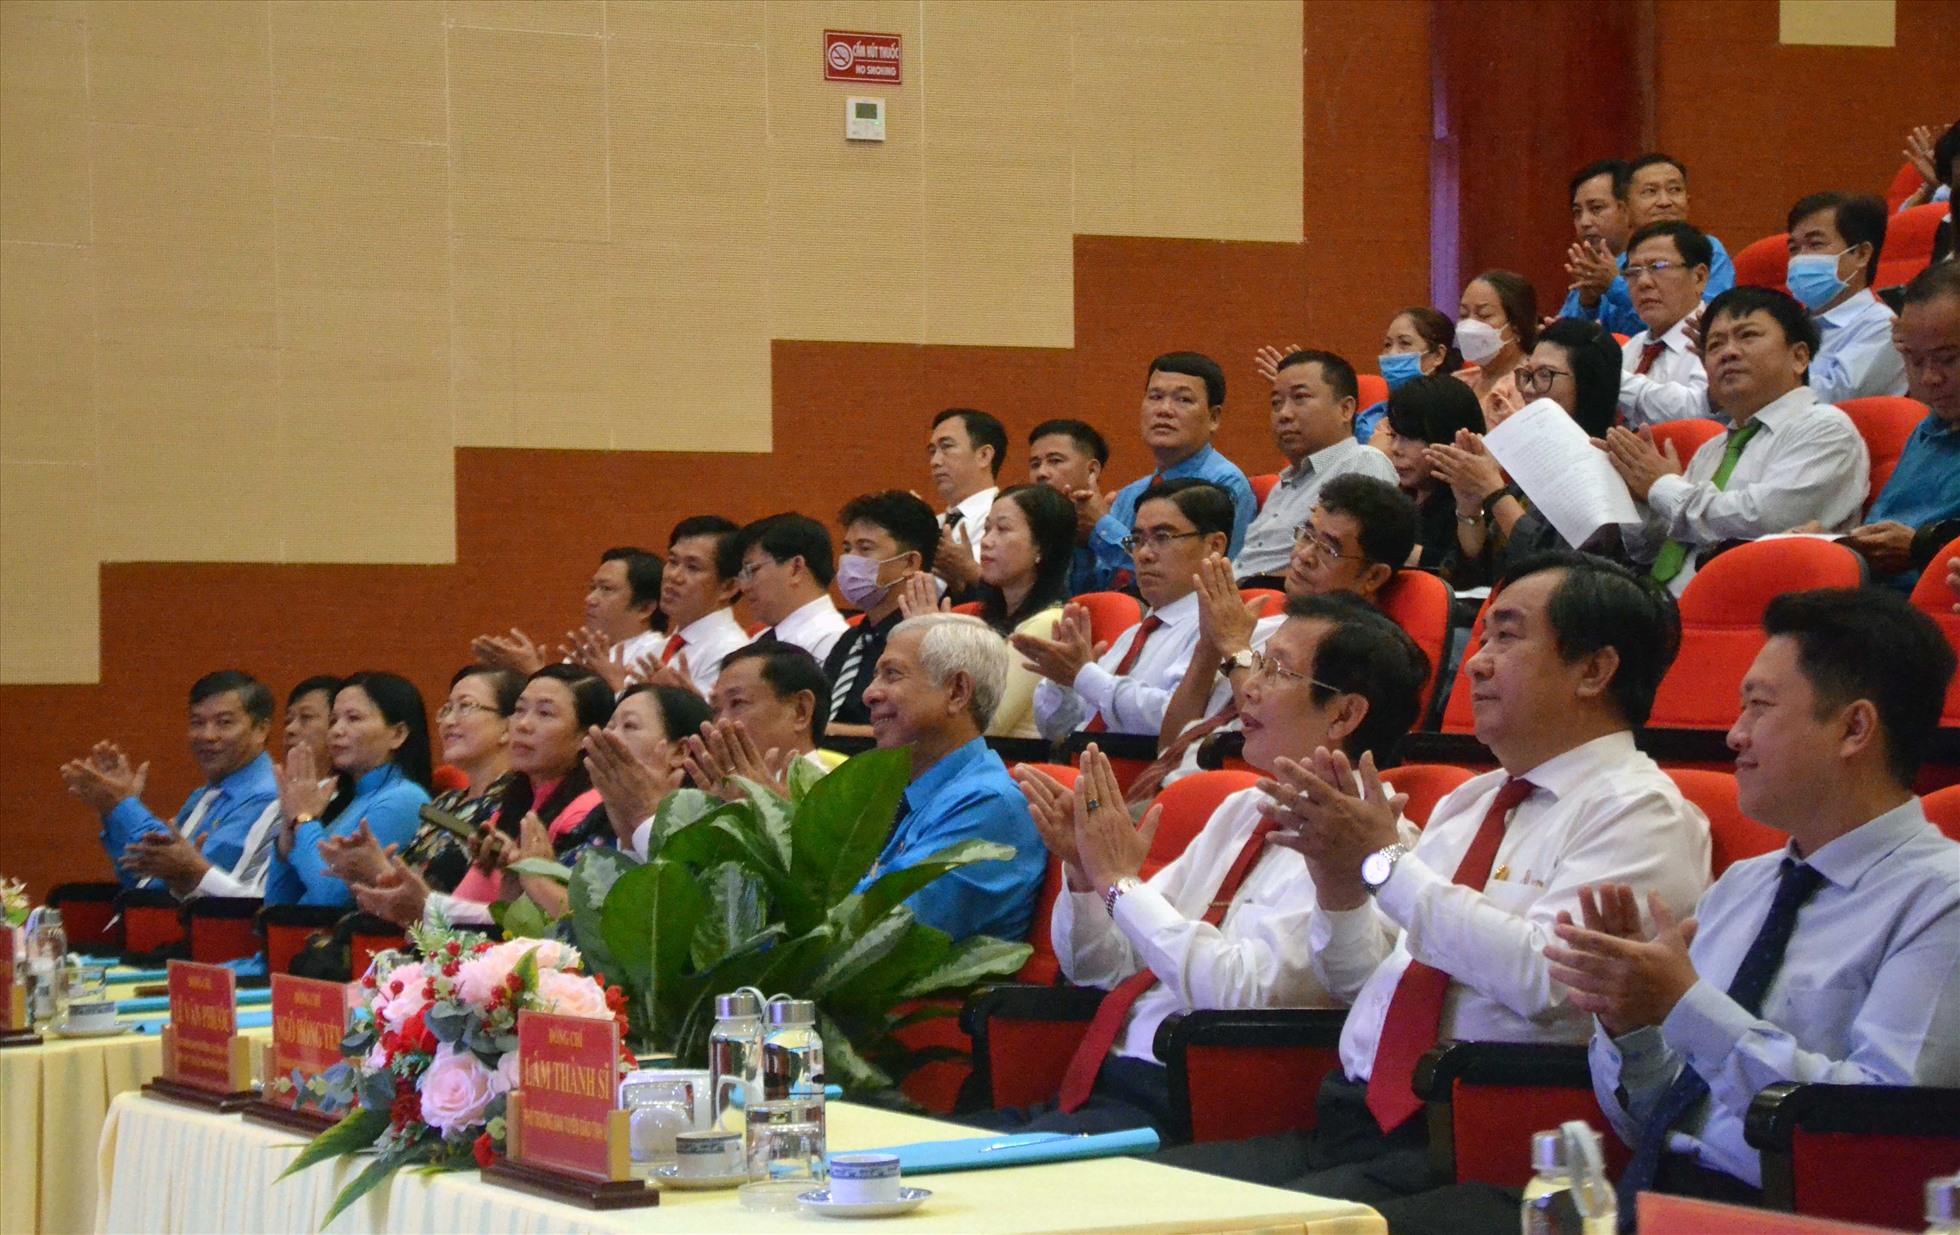 Buổi lễ tuyên dương doanh nghiệp vì người lao động tỉnh An Giang lần thứ 3/2022 có sự tham dự của nhiều đồng chí lãnh đạo tỉnh. Ảnh: LĐ